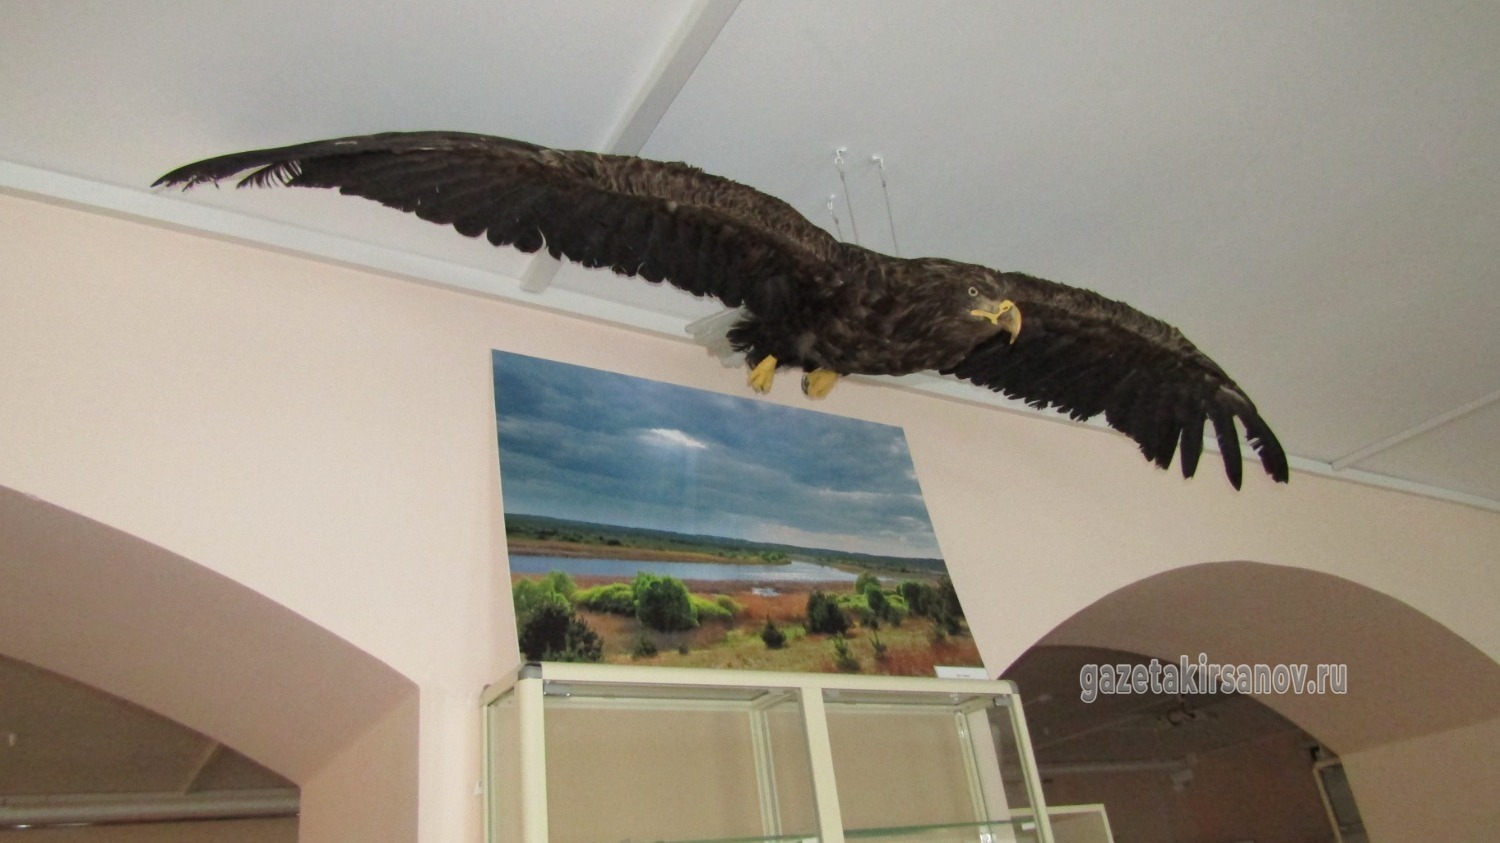 В кирсановском краеведческом музее появился краснокнижный экспонат – чучело орлана-белохвоста